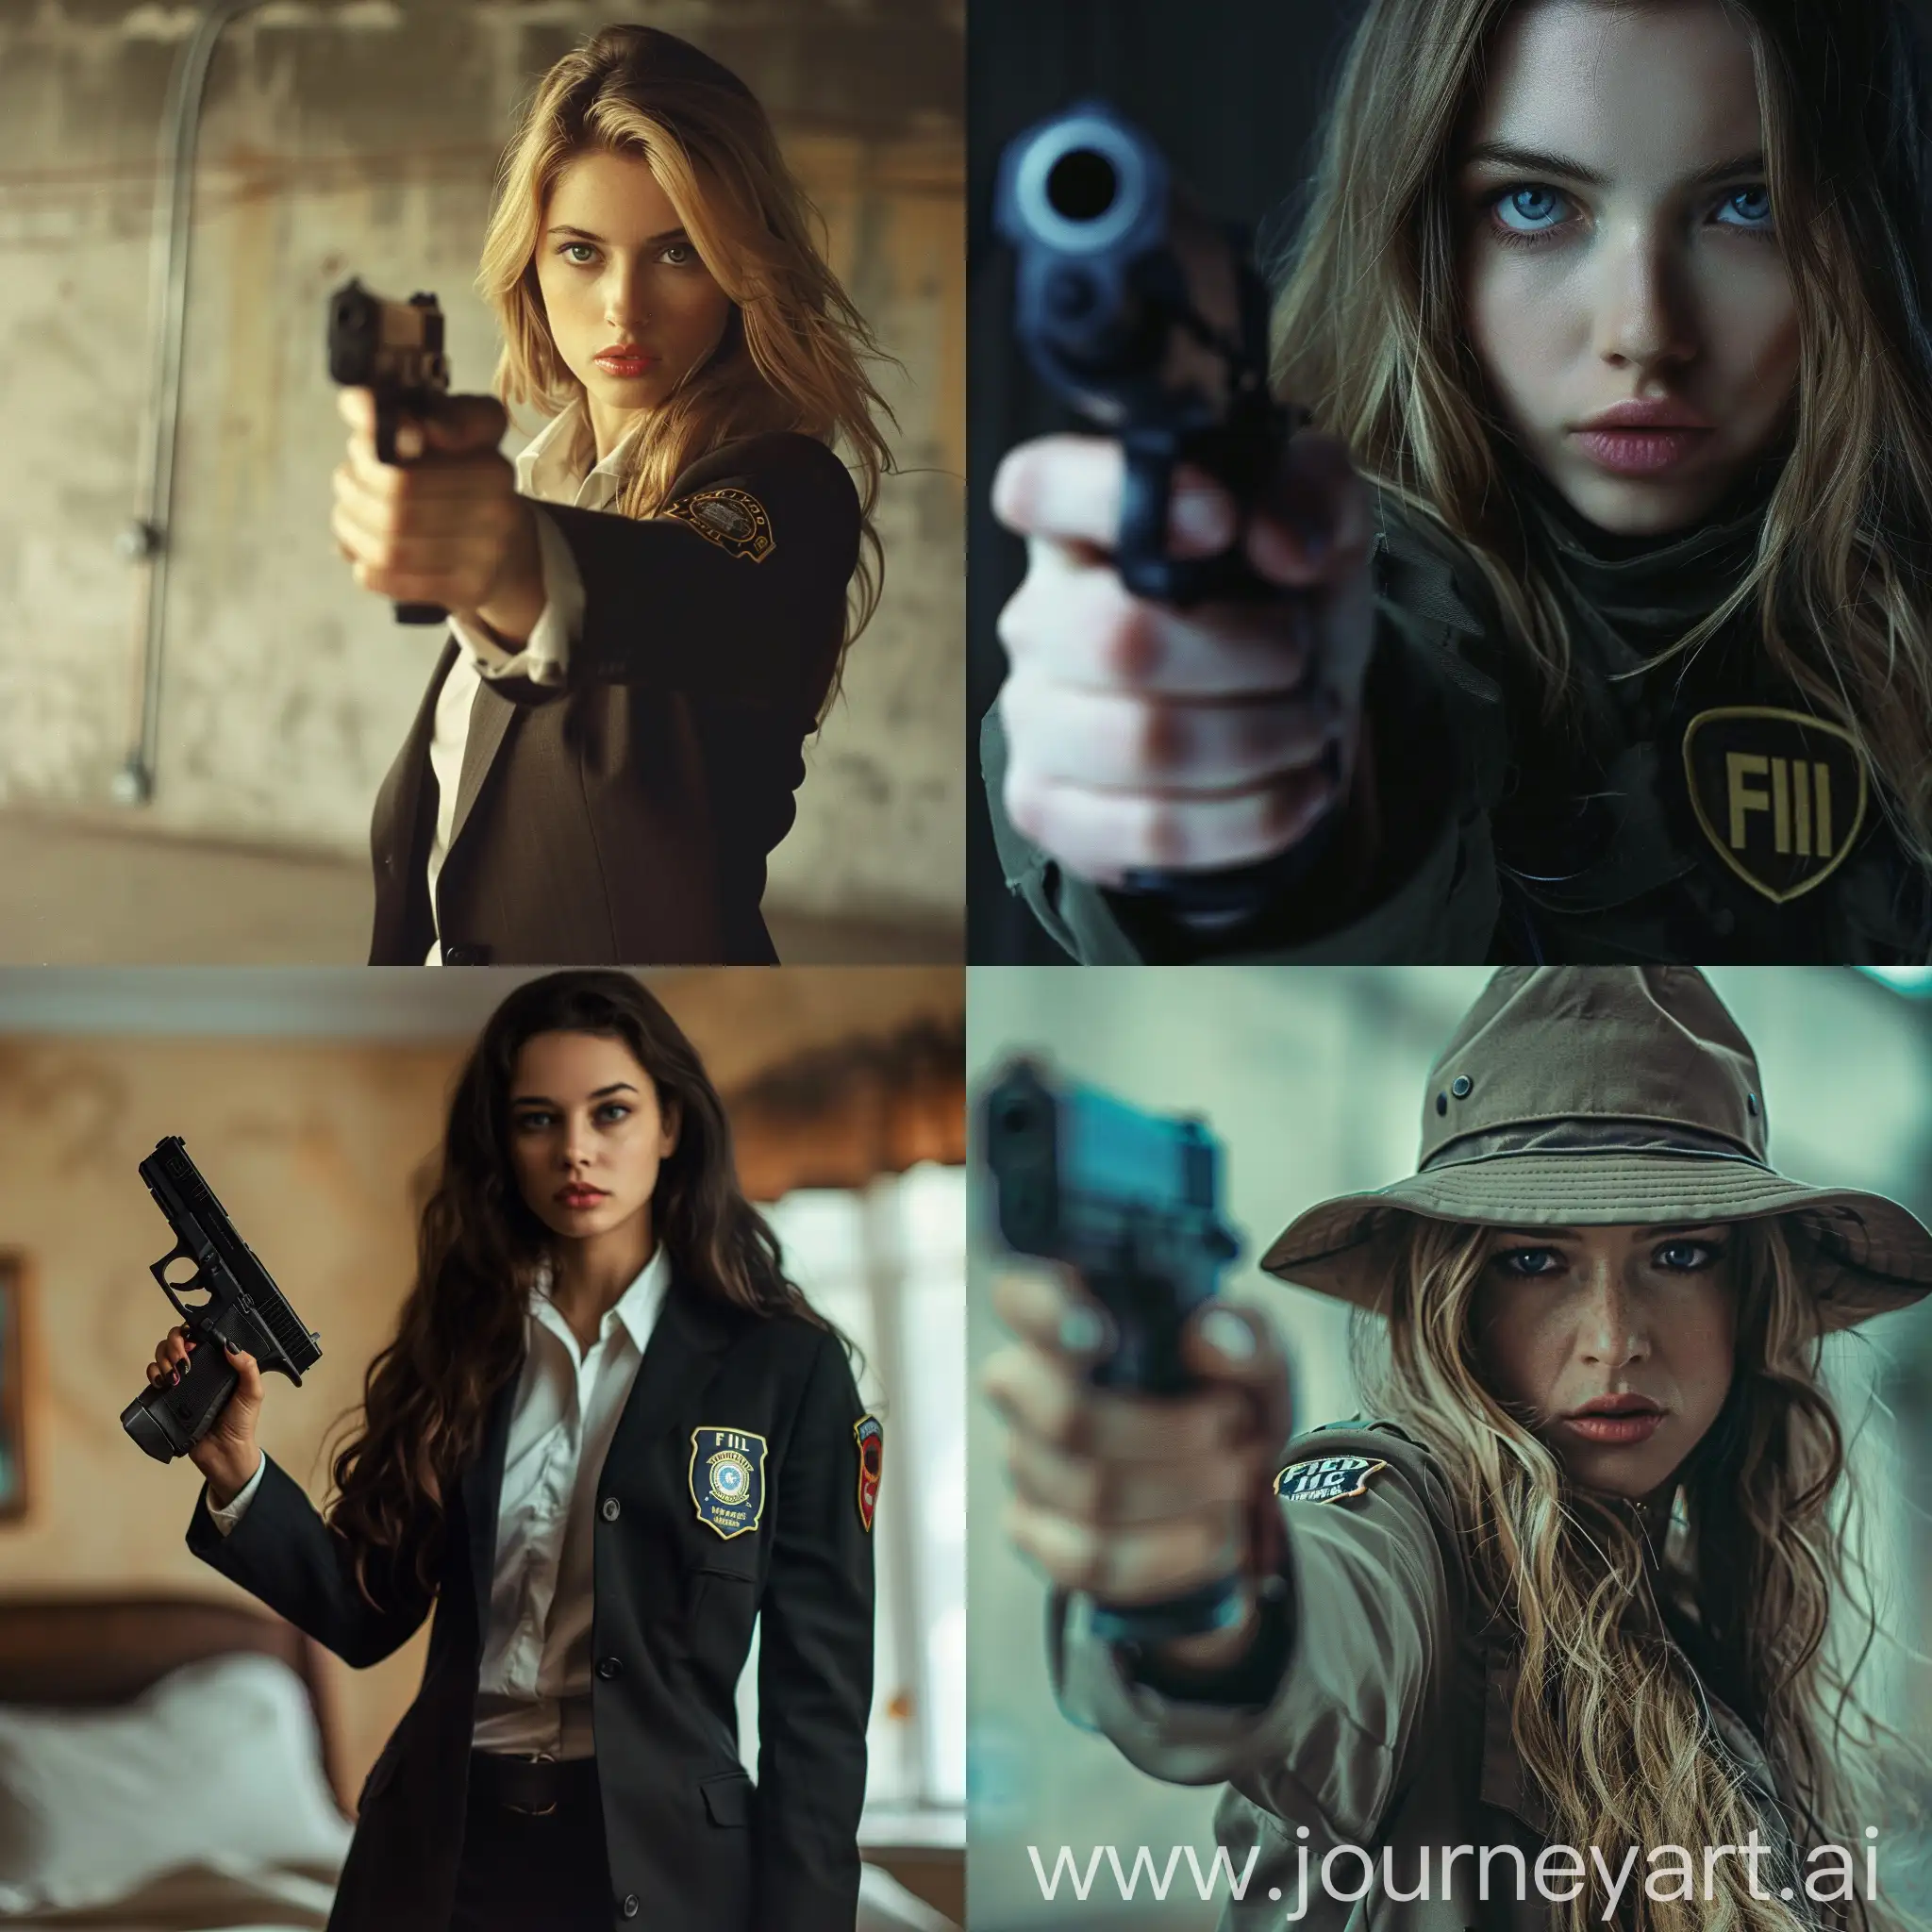 Stylish-FBI-Agent-Woman-with-Gun-in-Urban-Setting